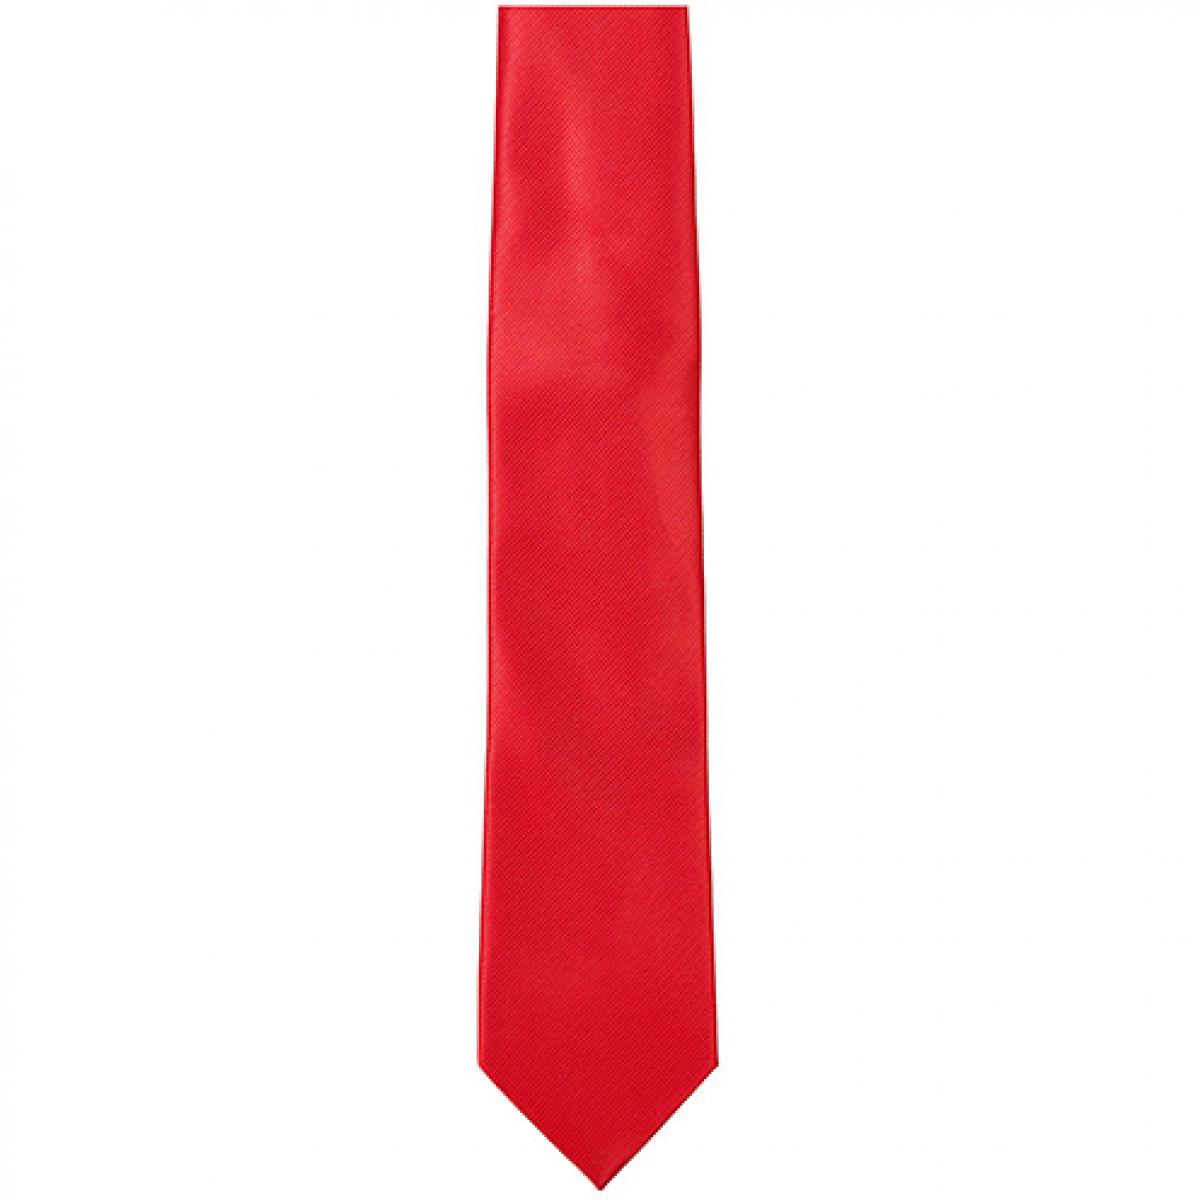 Hersteller: TYTO Herstellernummer: TT902 Artikelbezeichnung: Twill Tie / 144 x 8,5cm Farbe: Red